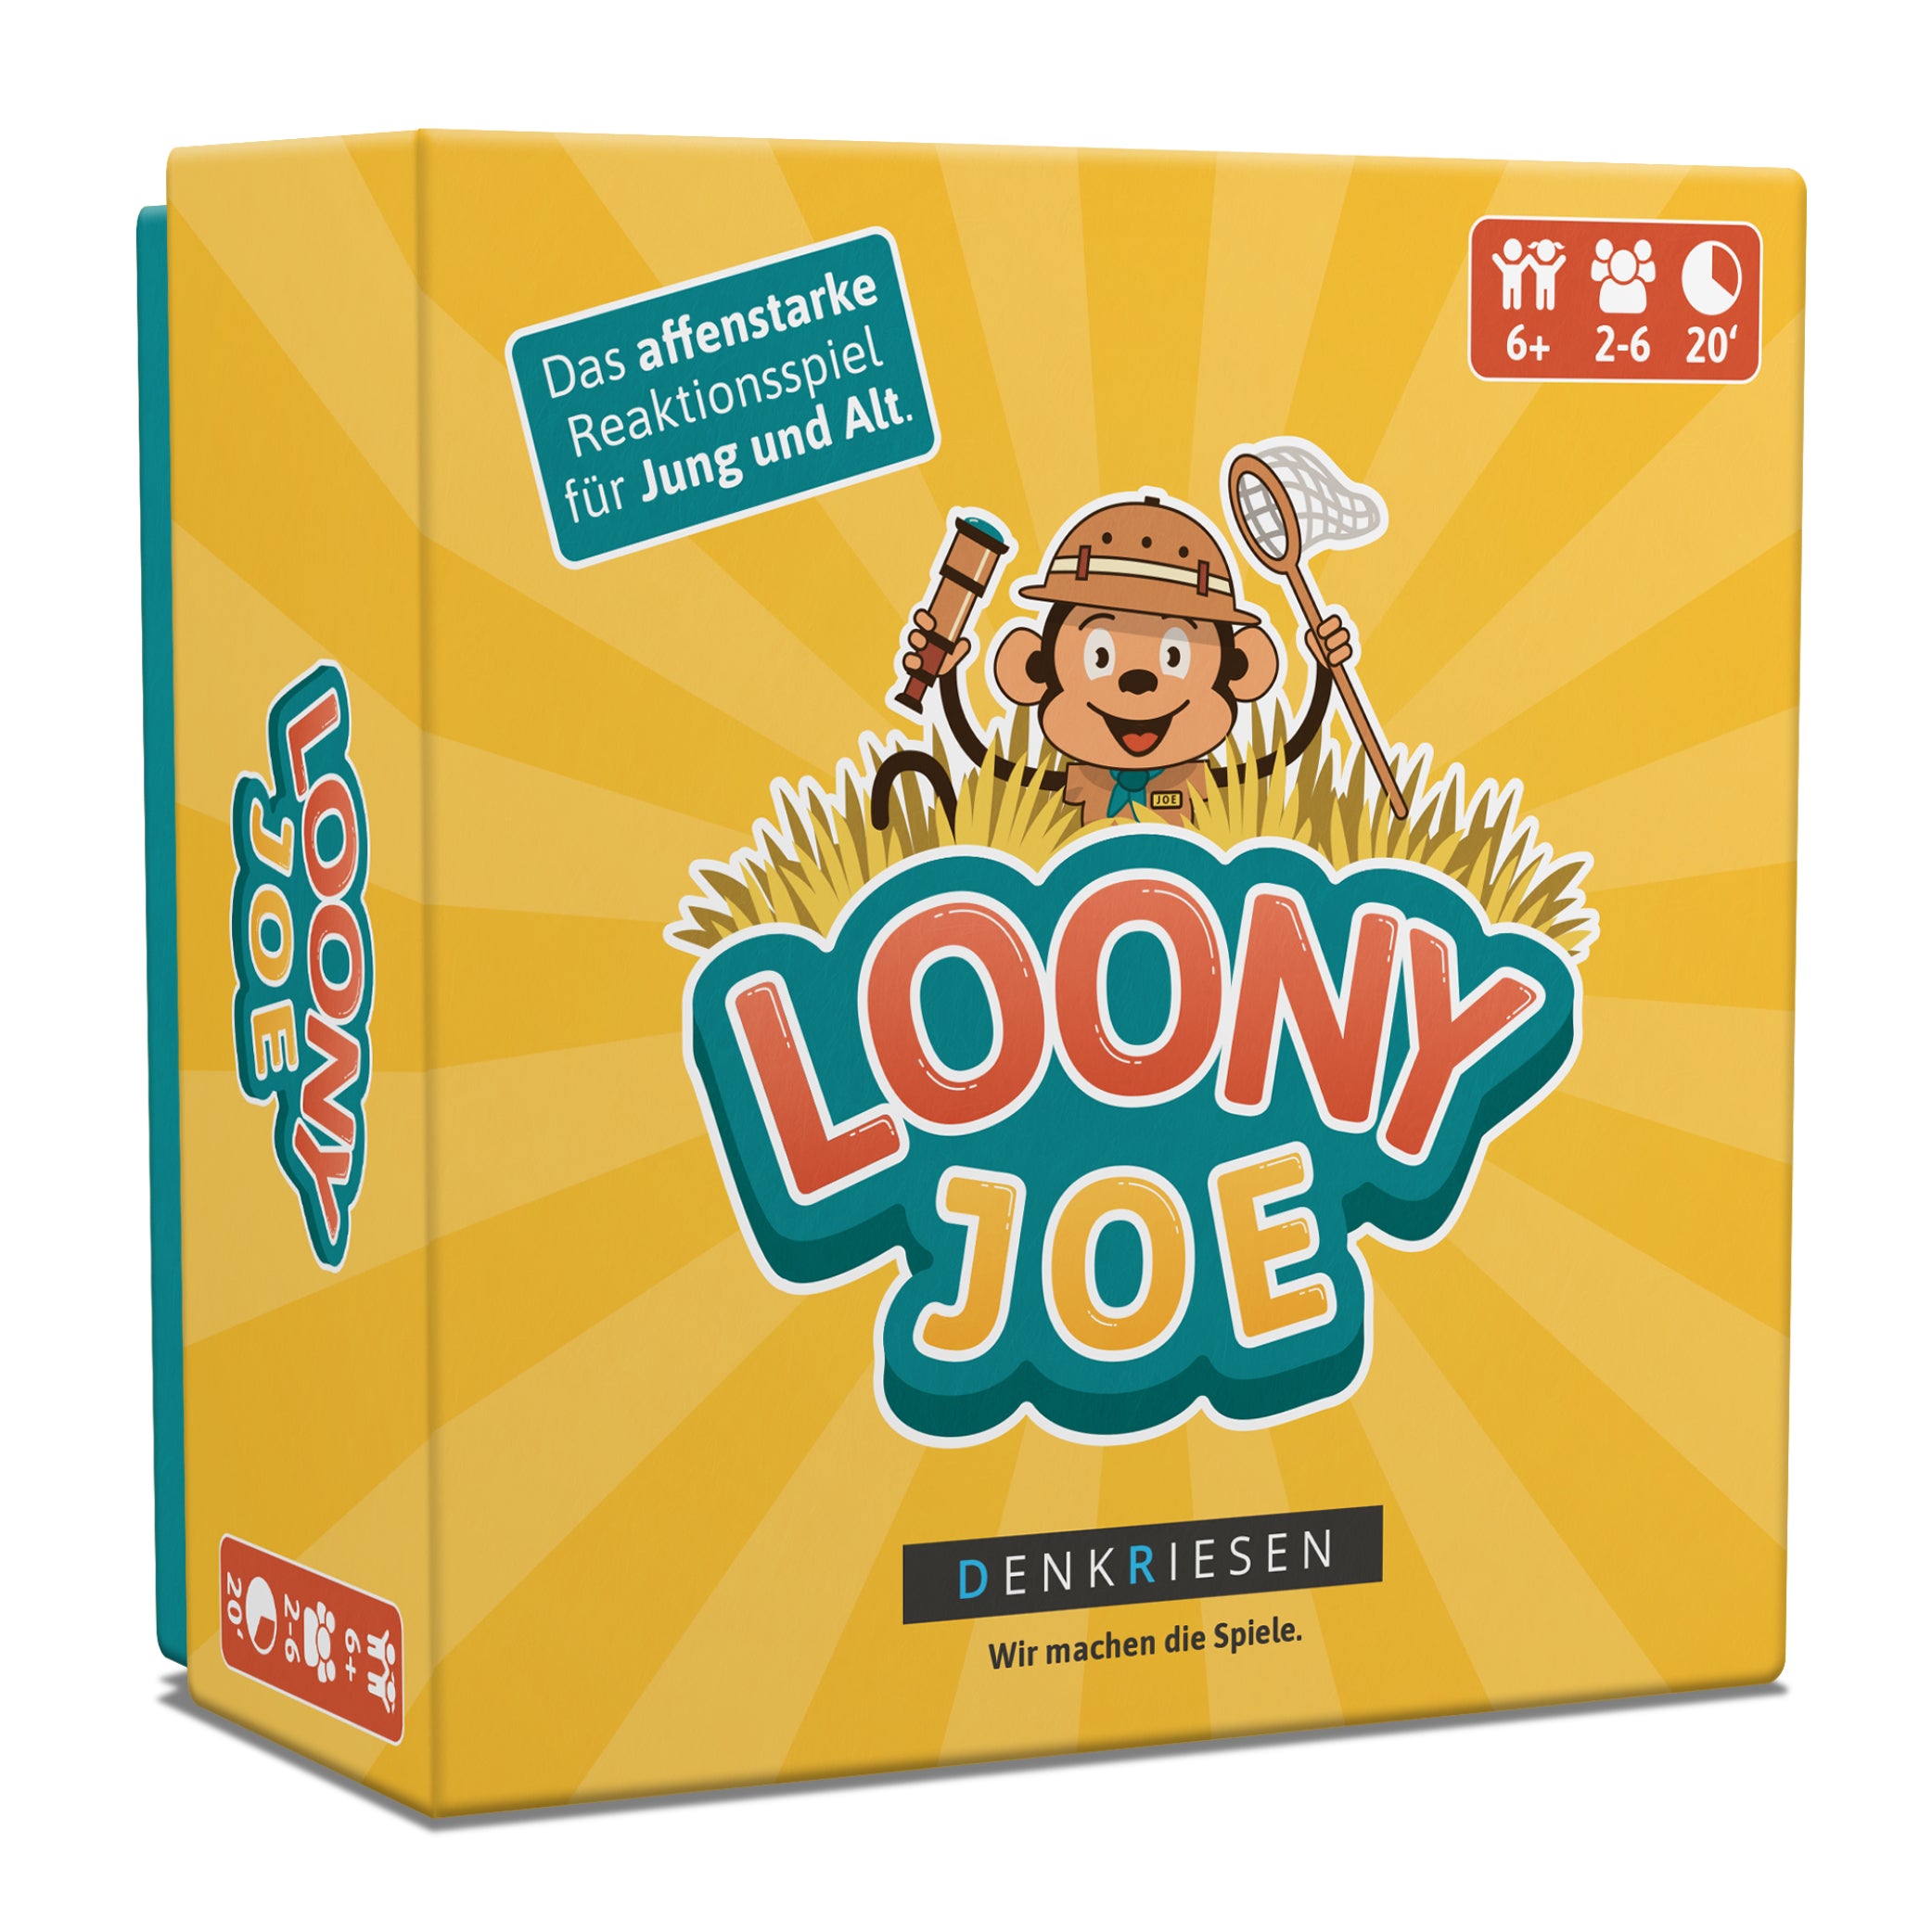 Loony Joe® – "Das affenstarke Reaktionsspiel für Jung und Alt."